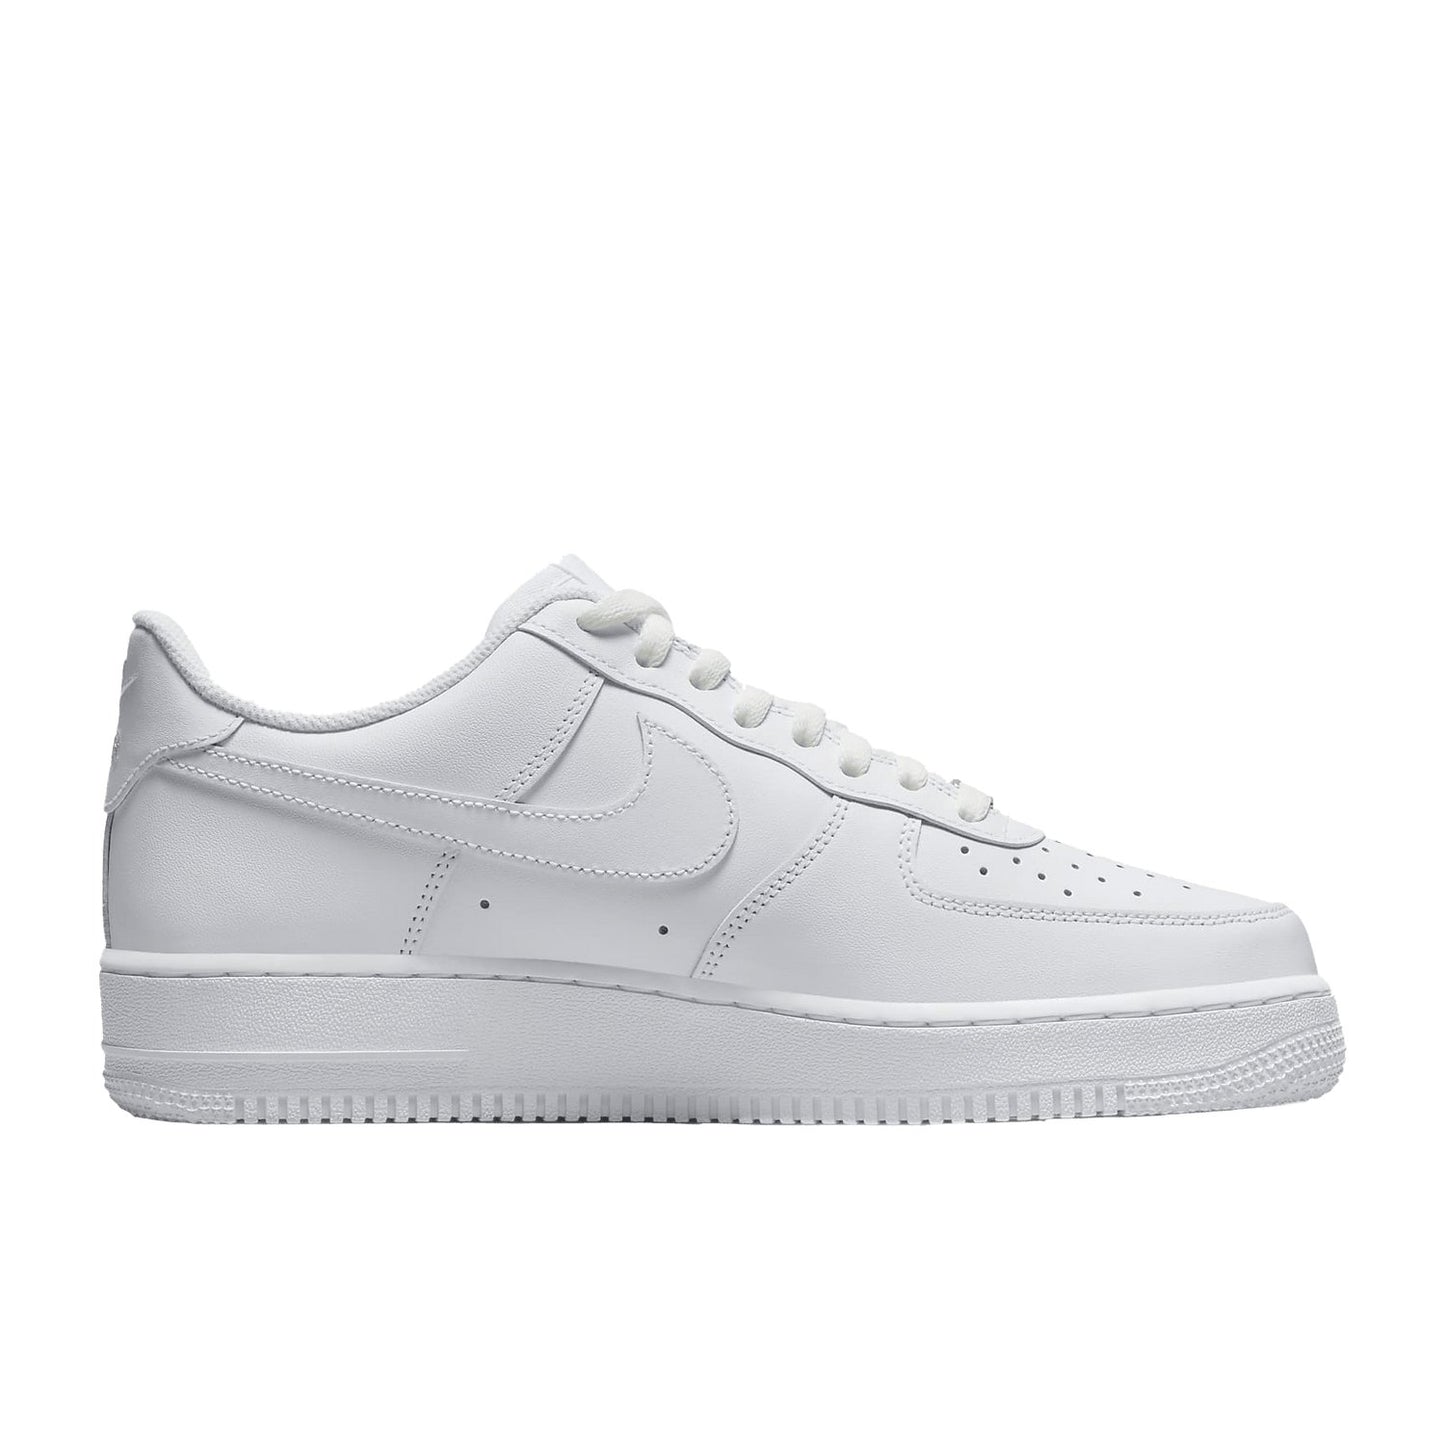 Nike Air Force 1 x Travis Scott Utopia White (Cactus Jack) - Sneakersbe Sneakers Sale Online